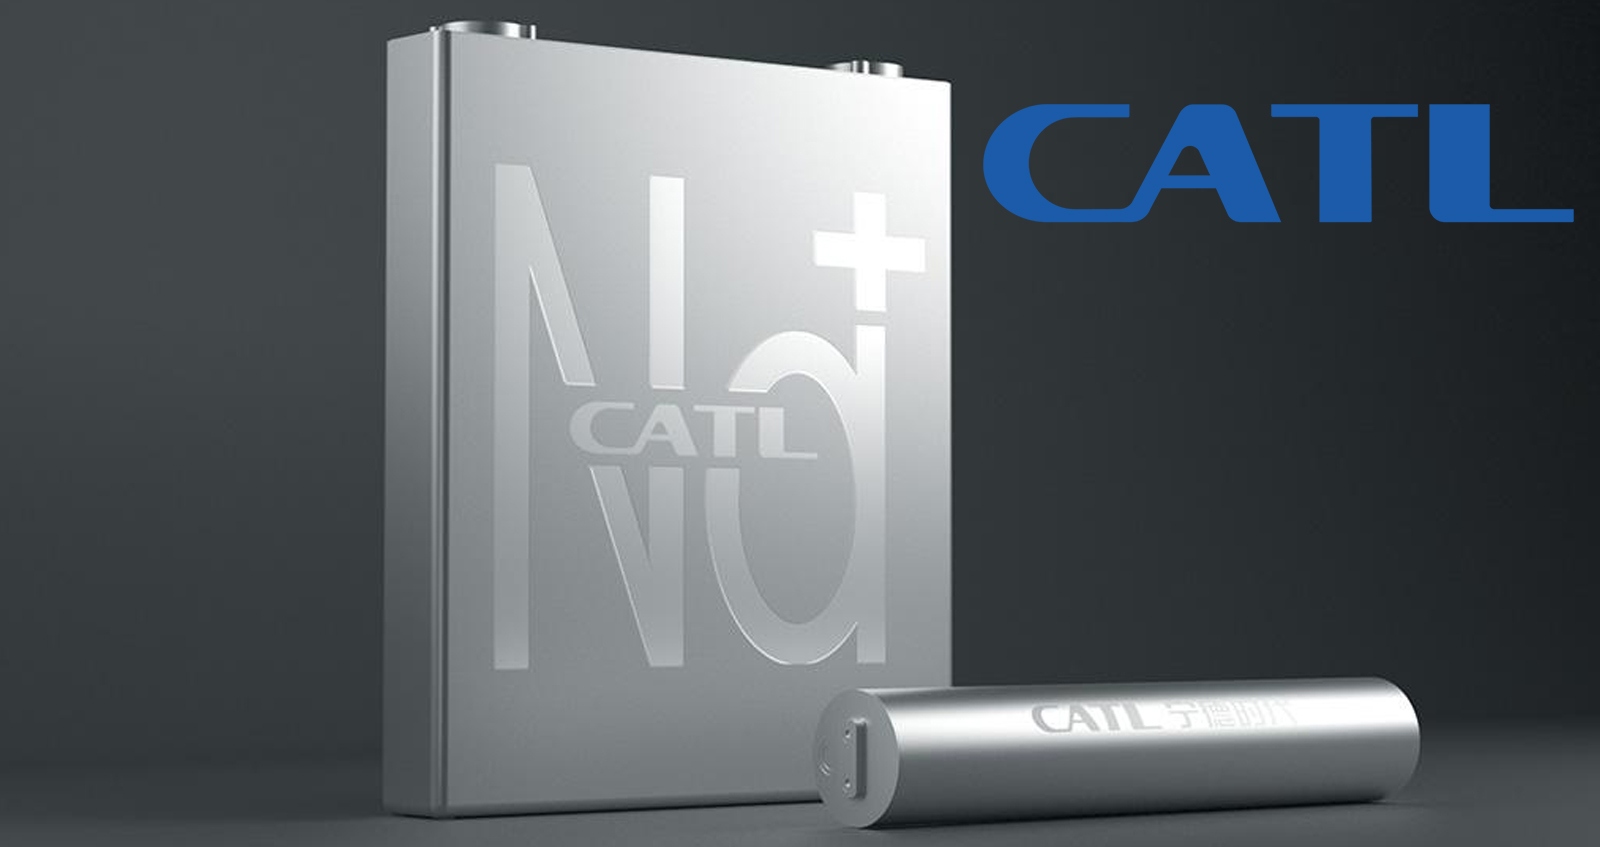 CATL เปิดตัวแบตเตอรี่ชาร์จ 0-80% ใน 15 นาที ความหนาแน่น 160Wh/kg (โซเดียมไอออน)